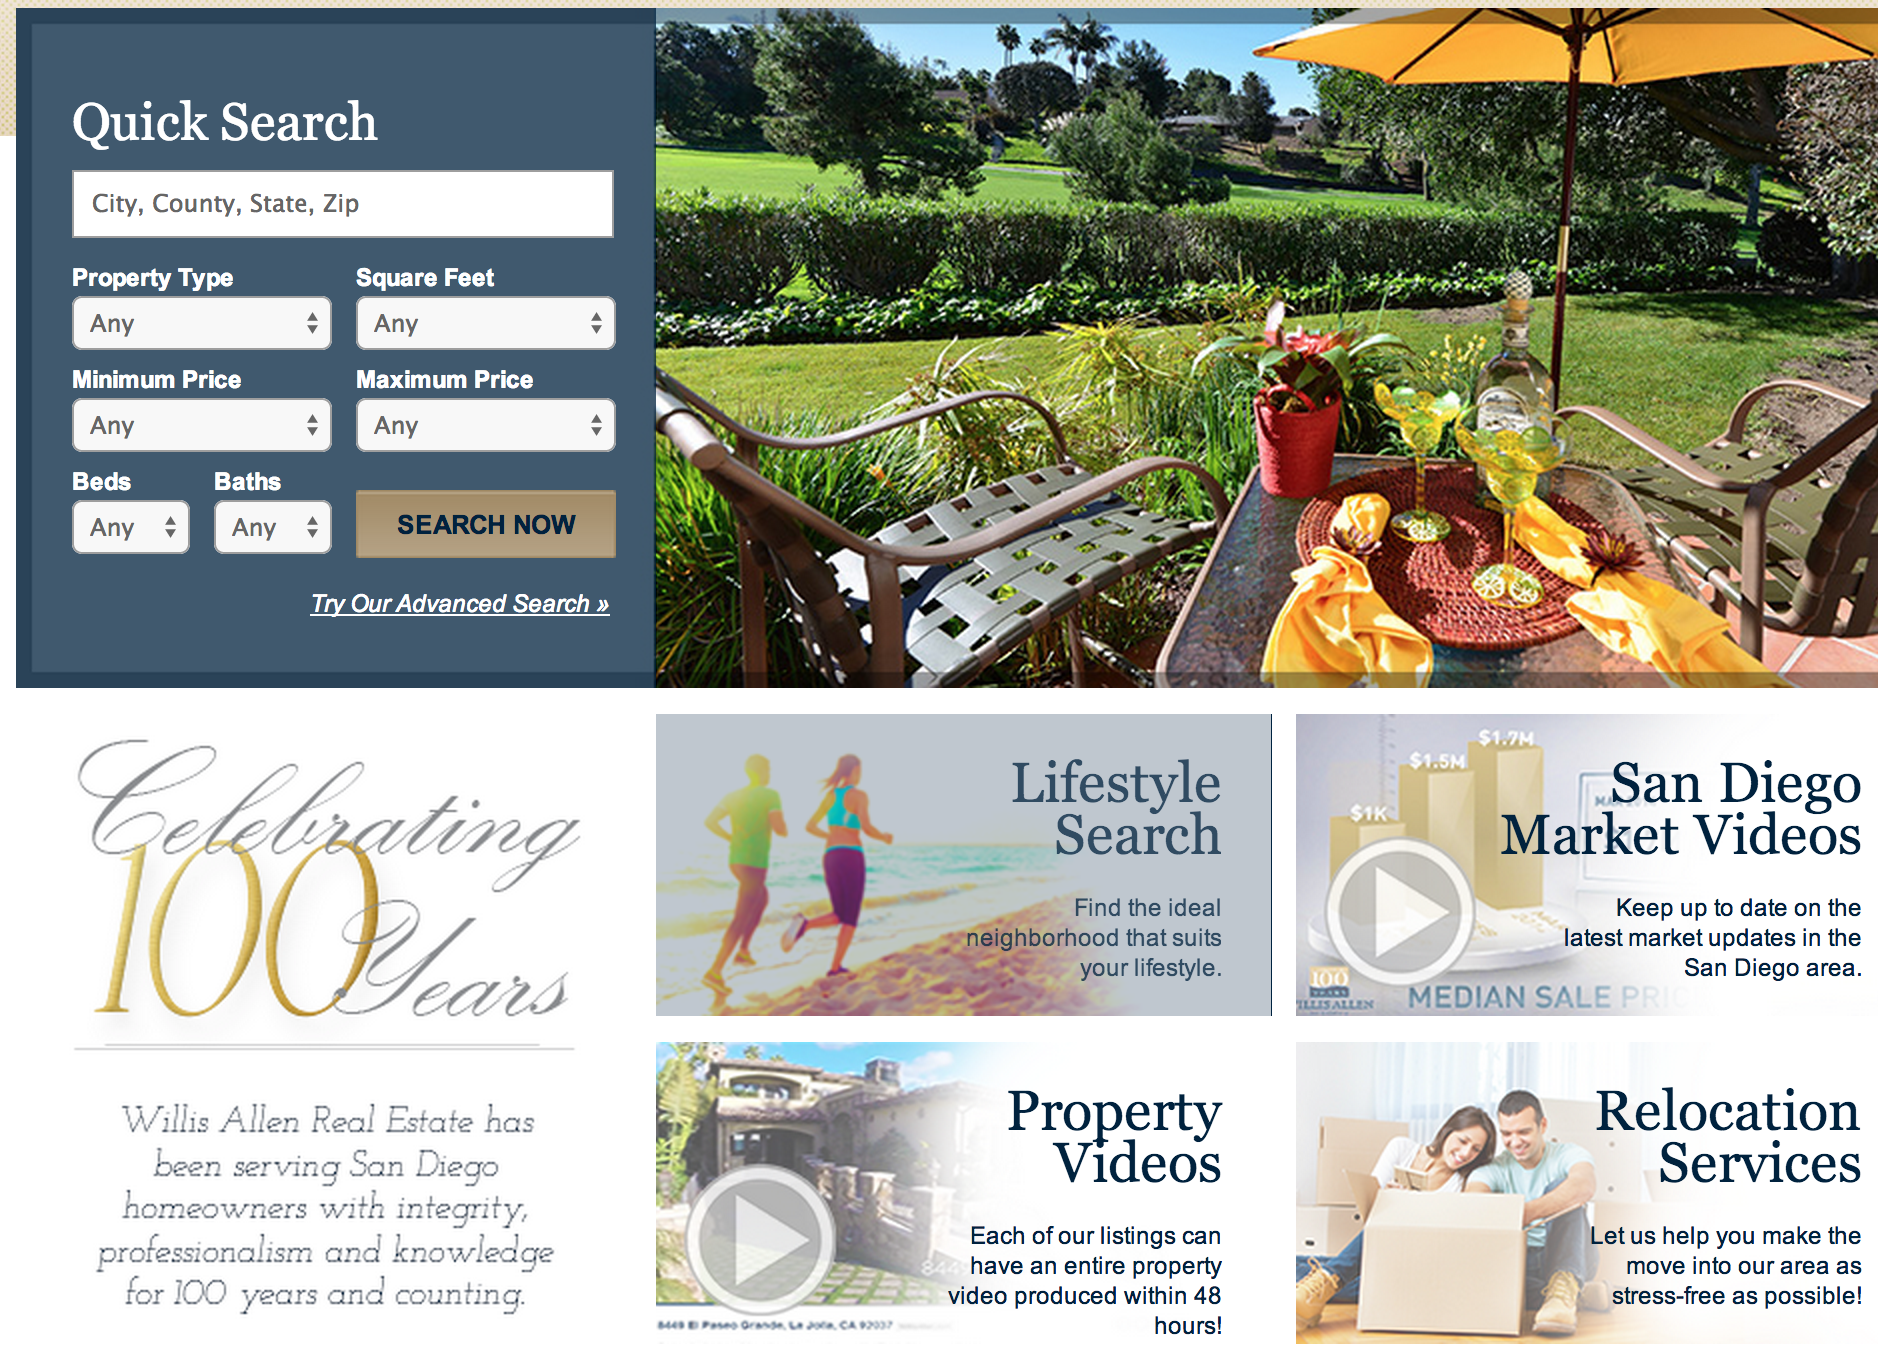 Screen shot of Willis Allen Real Estate's current website.